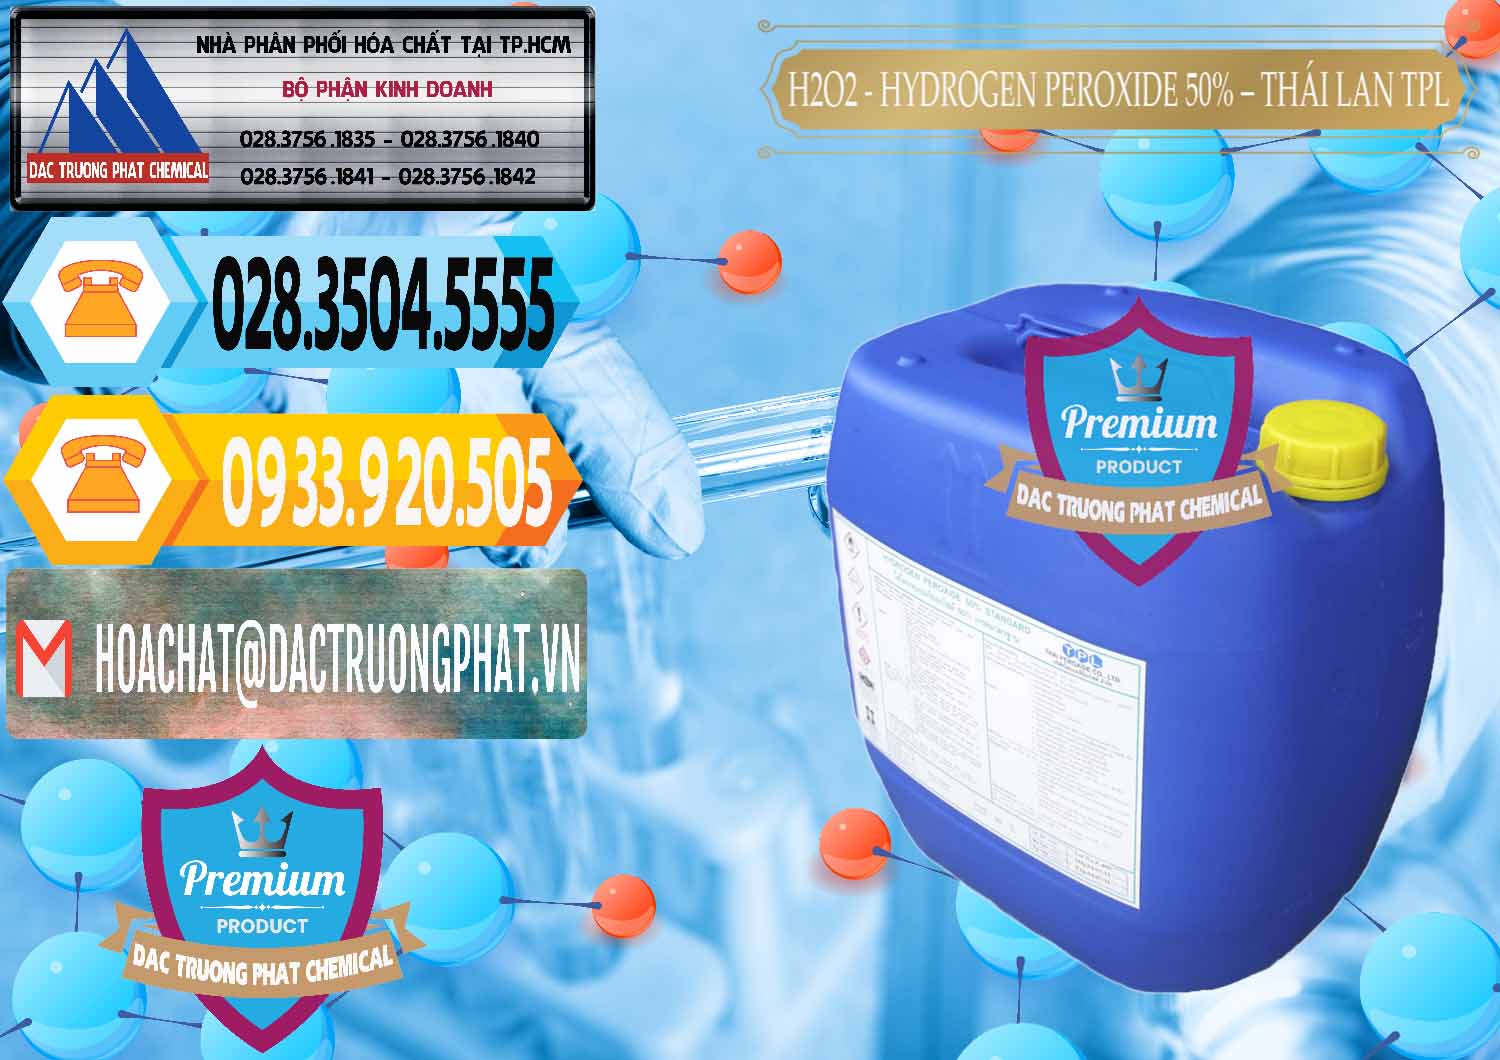 Nơi bán và cung cấp H2O2 - Hydrogen Peroxide 50% Thái Lan TPL - 0076 - Công ty chuyên cung cấp ( bán ) hóa chất tại TP.HCM - hoachattayrua.net